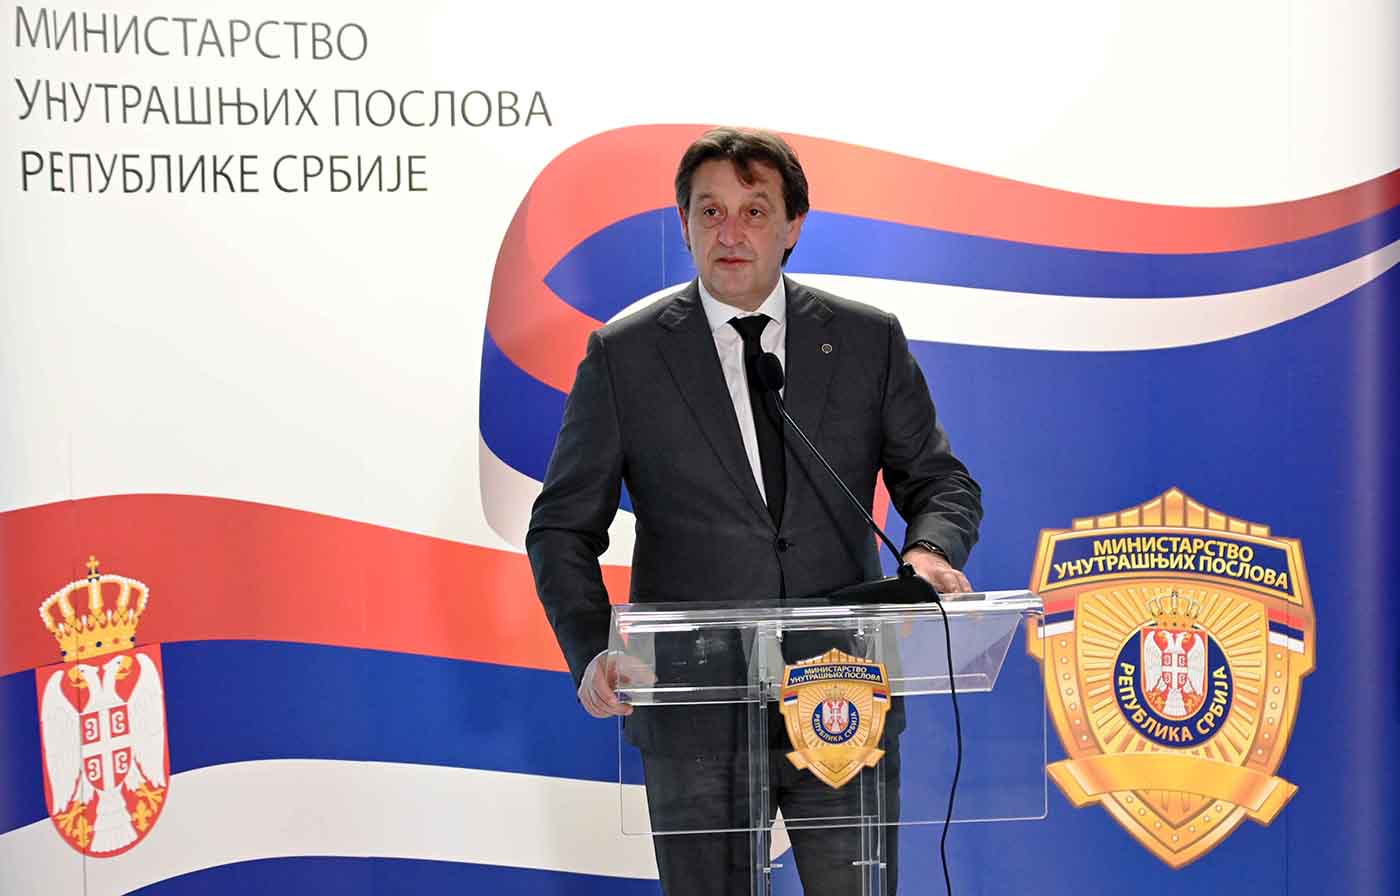 Ministar Gašić zahvalio policijskim službenicima i vatrogascima na brzom i hrabrom reagovanju u akcidentu sa amonijakom